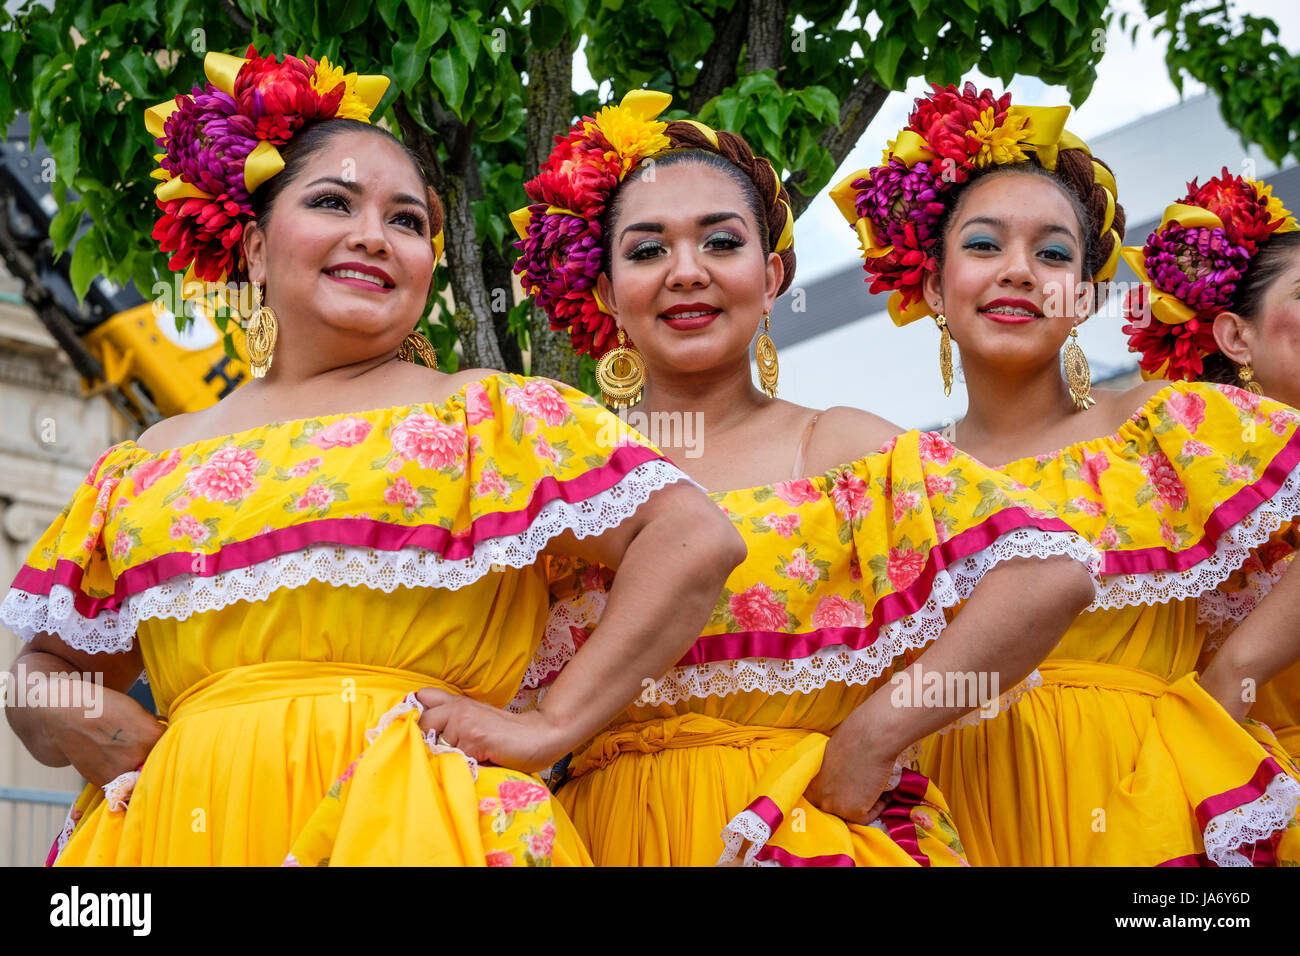 Gruppe von mexikanischen Tänzerinnen Folk tragen traditionelle mexikanische  Sinaloa Kleider, gelbe Kleider, feiern, kulturelles Erbe Mexikos,  folkloristischen Tanz, Gruppenbild, Blick in die Kamera Stockfotografie -  Alamy